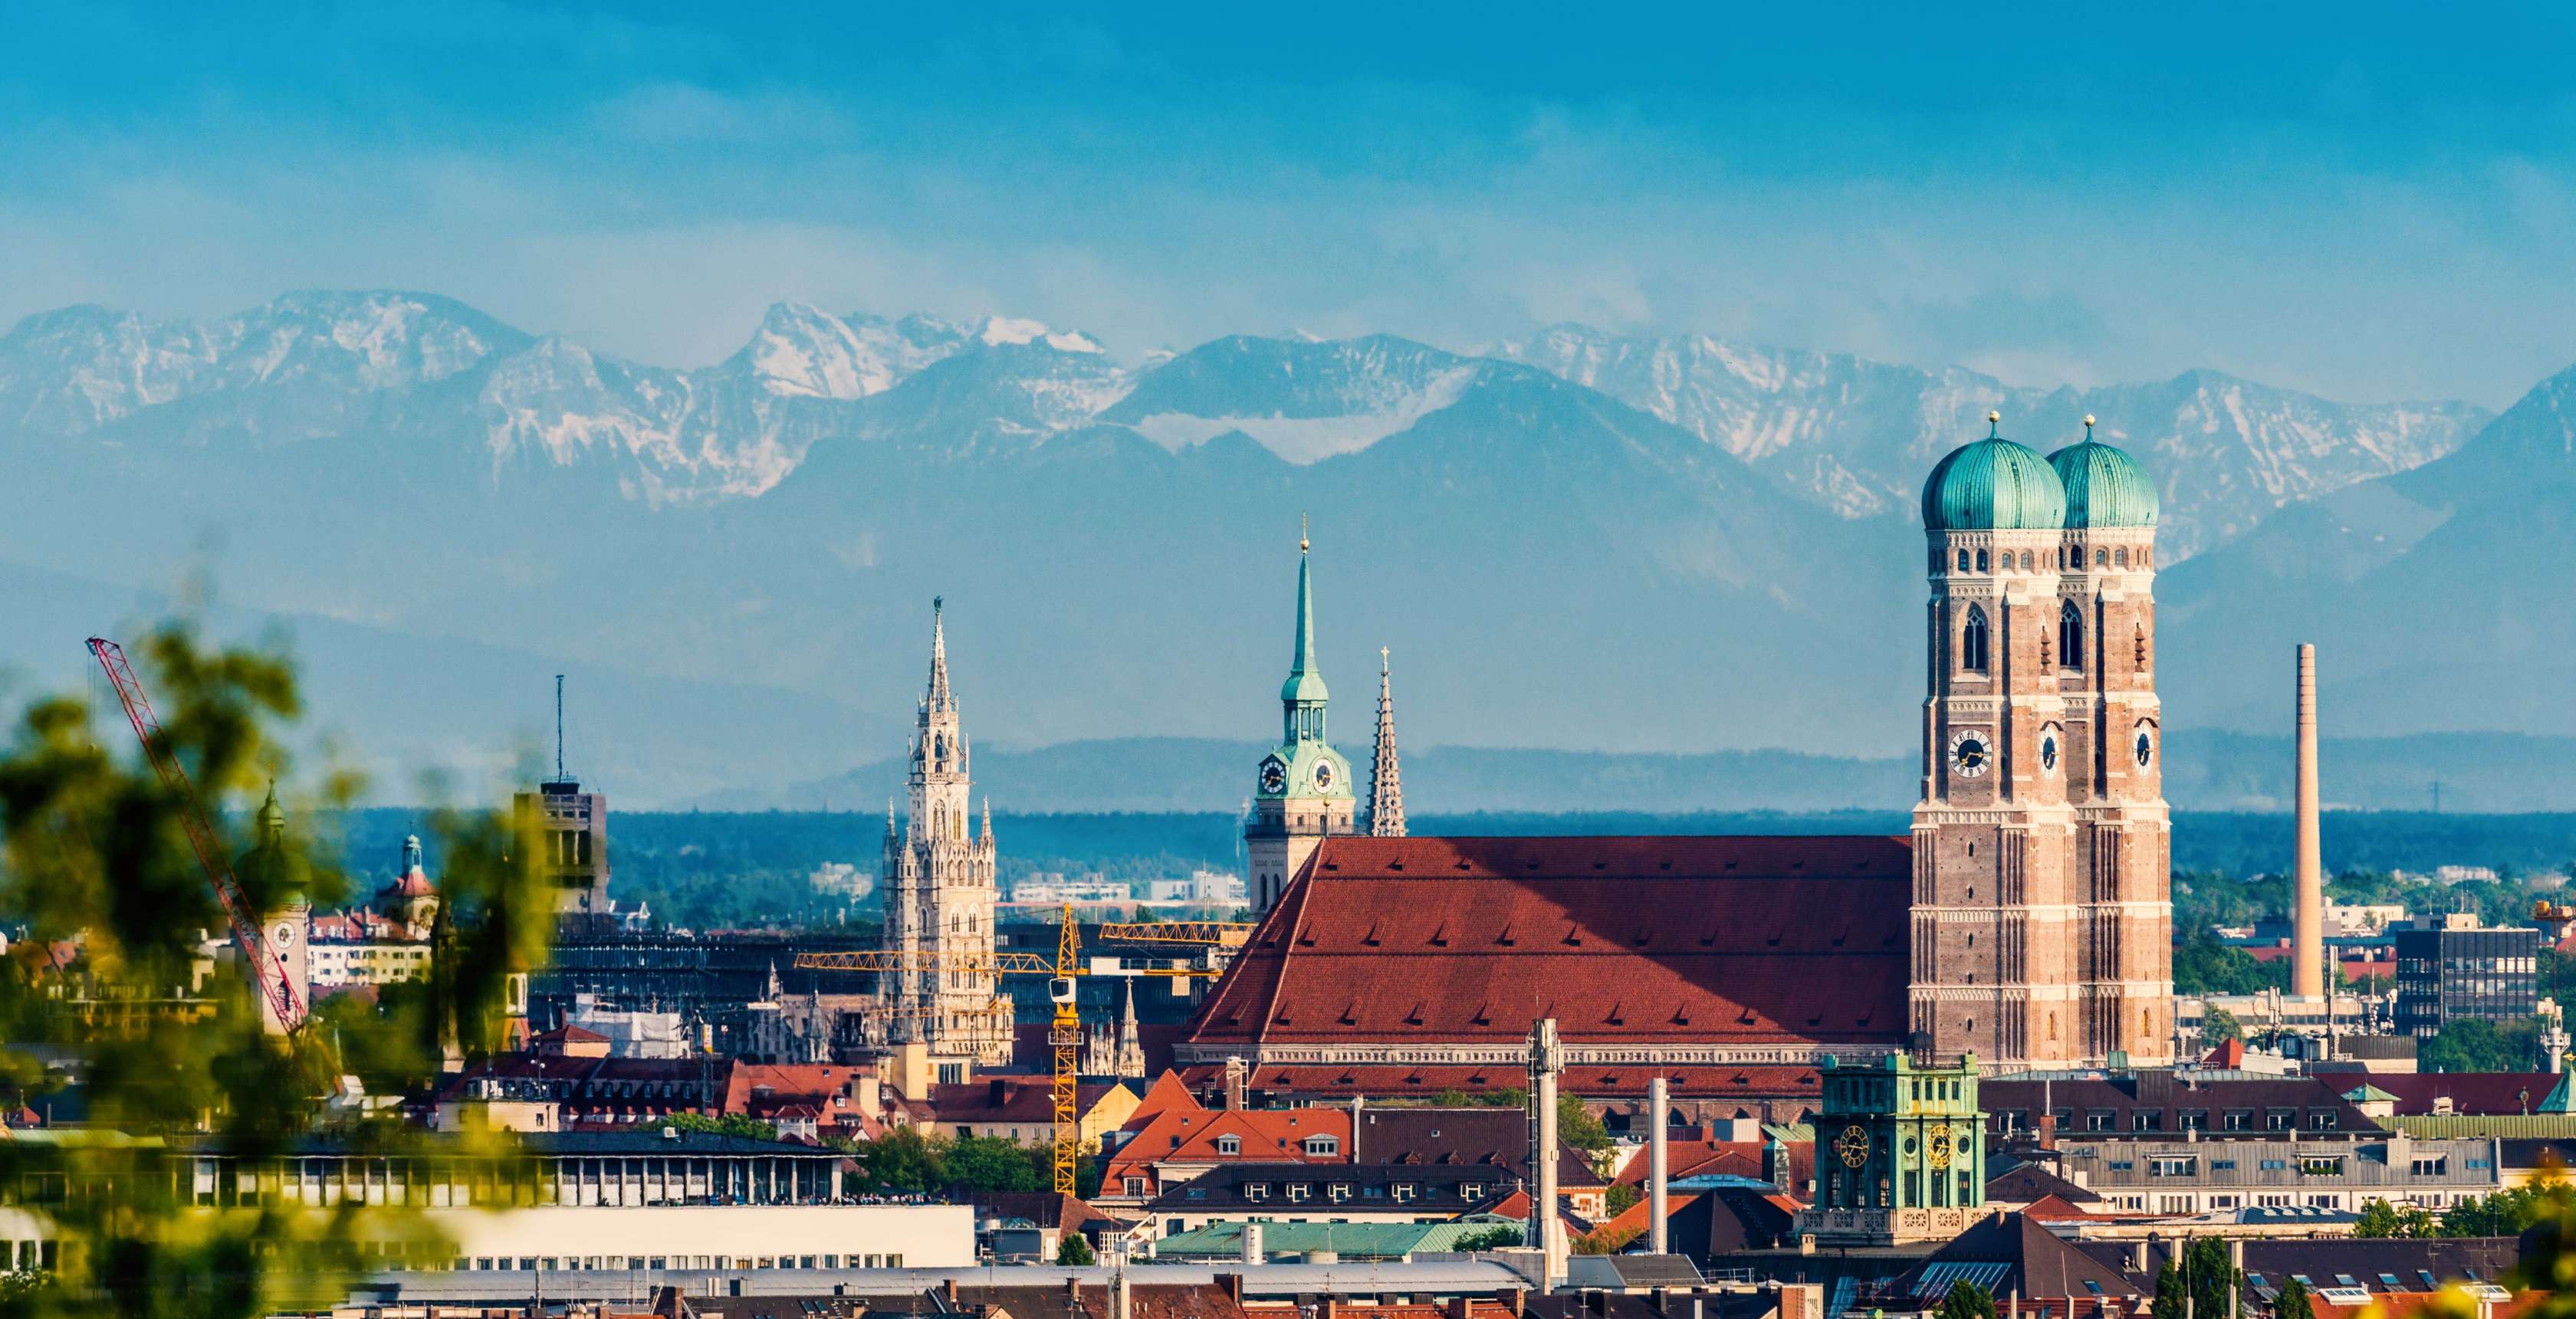 Baufinanzierung in München: Kontaktieren Sie unsere Experten und vereinbaren Sie Ihren persönlichen Beratungstermin